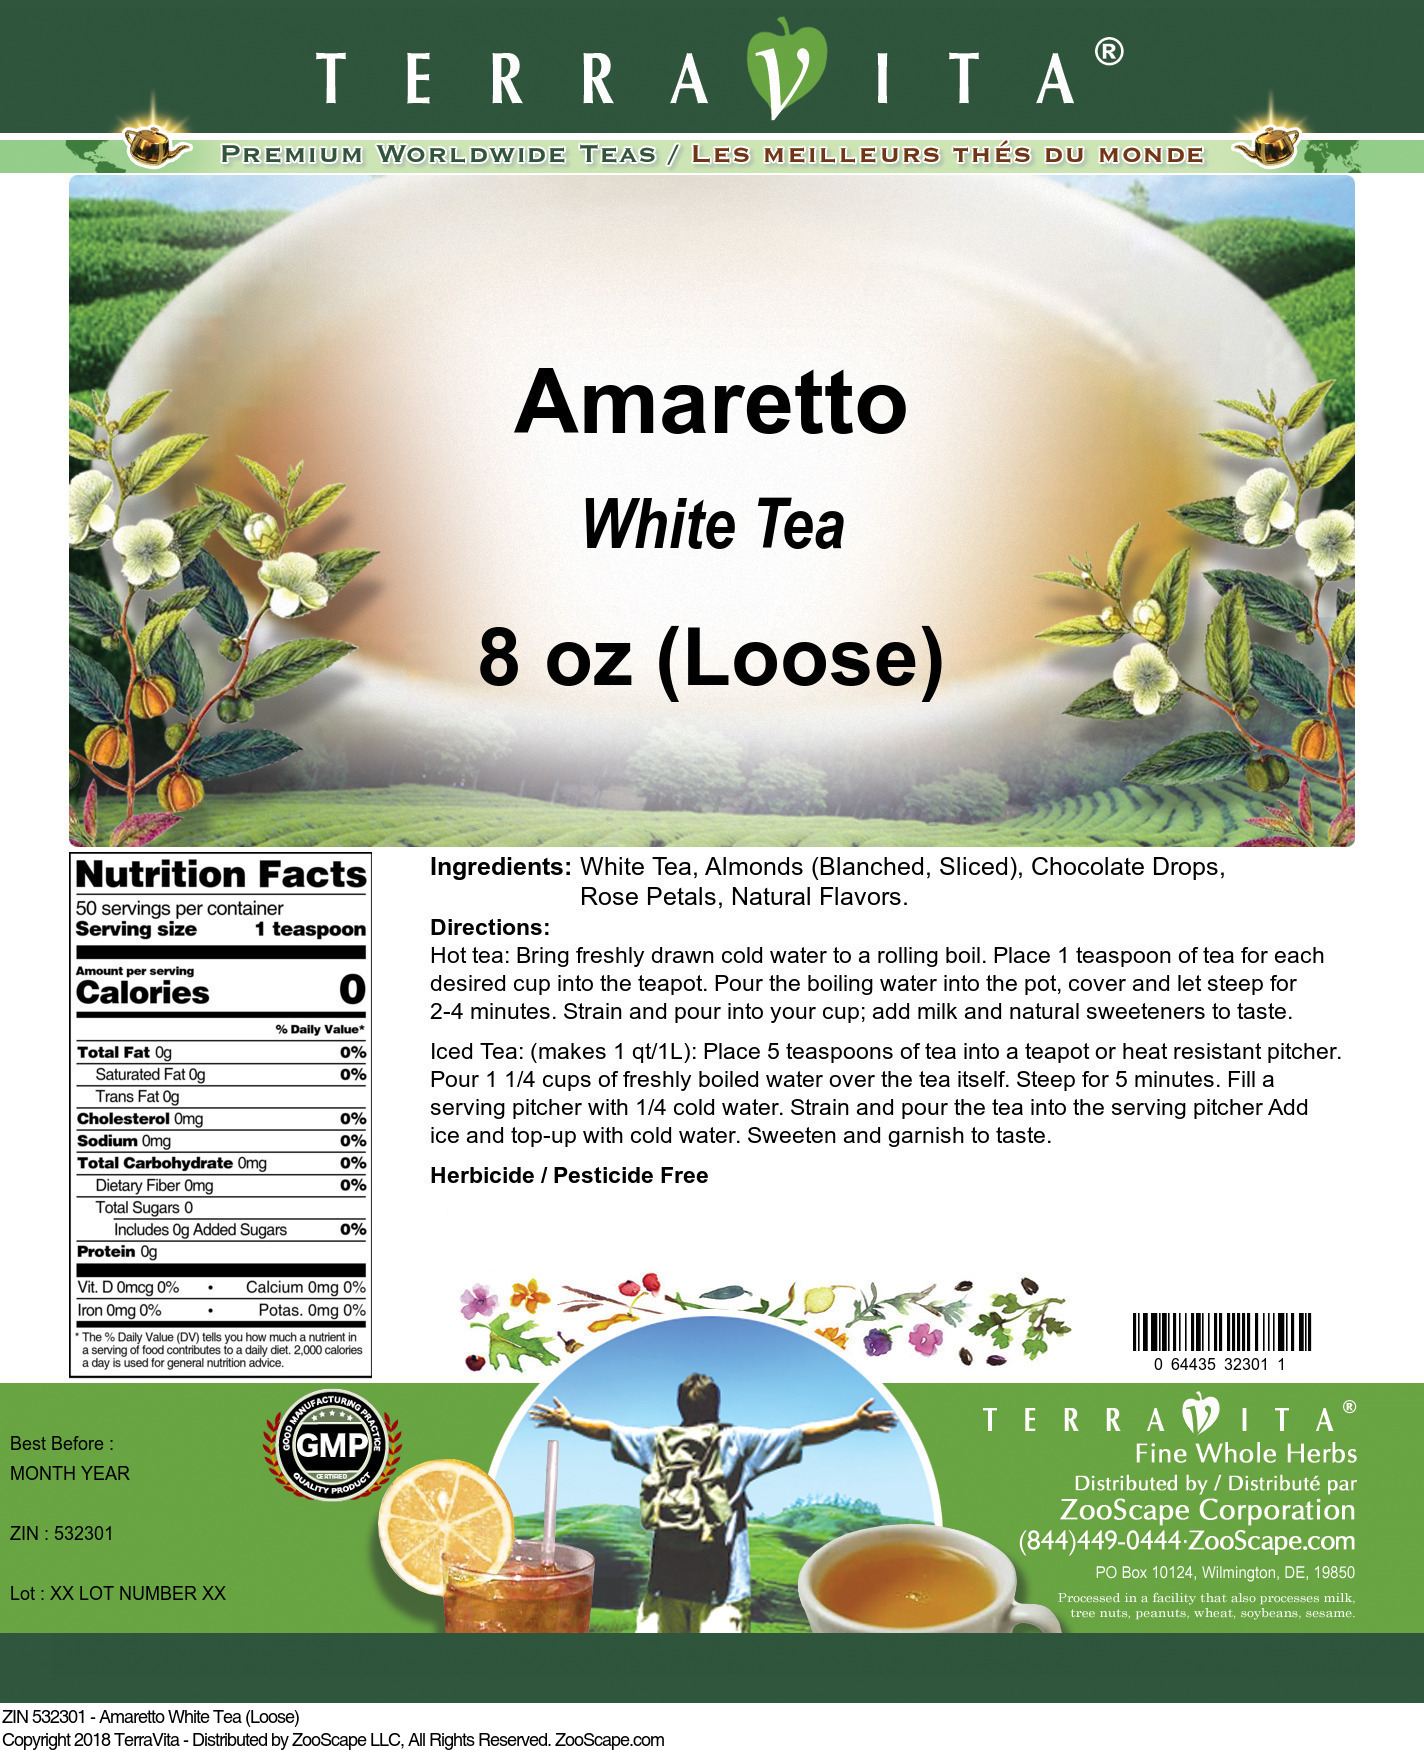 Amaretto White Tea (Loose) - Label